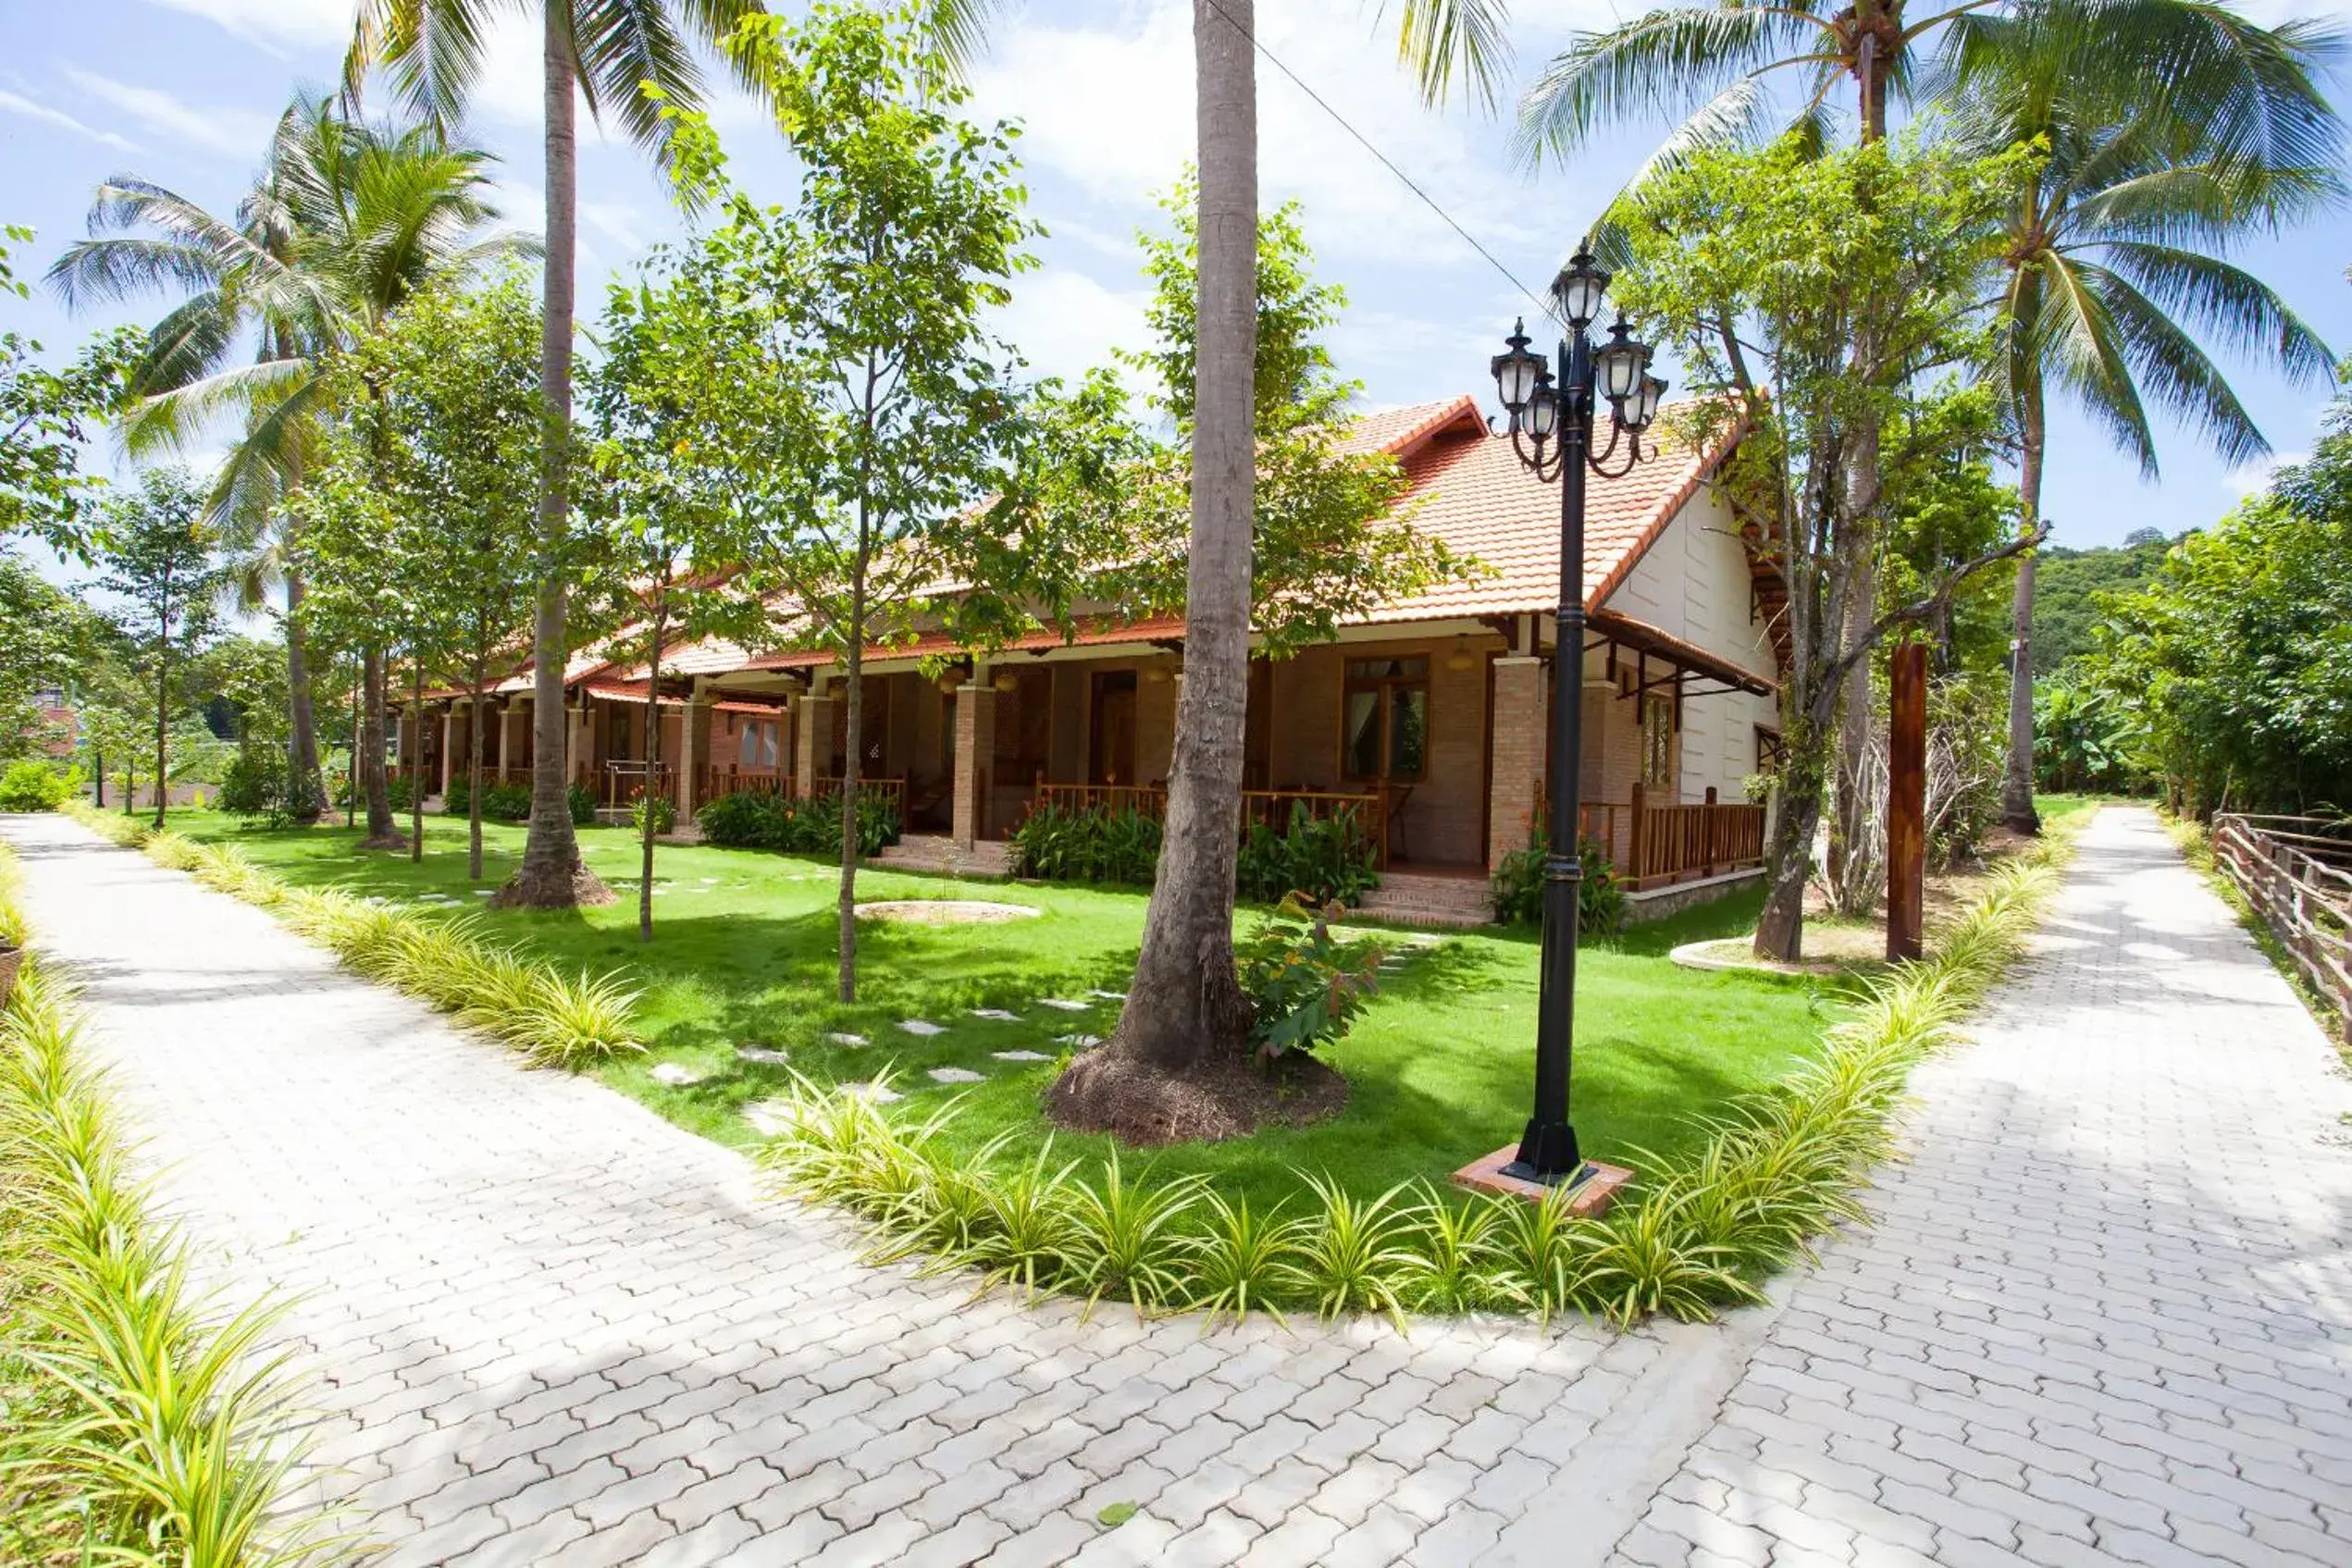 Property building, Garden in The Garden House Phu Quoc Resort